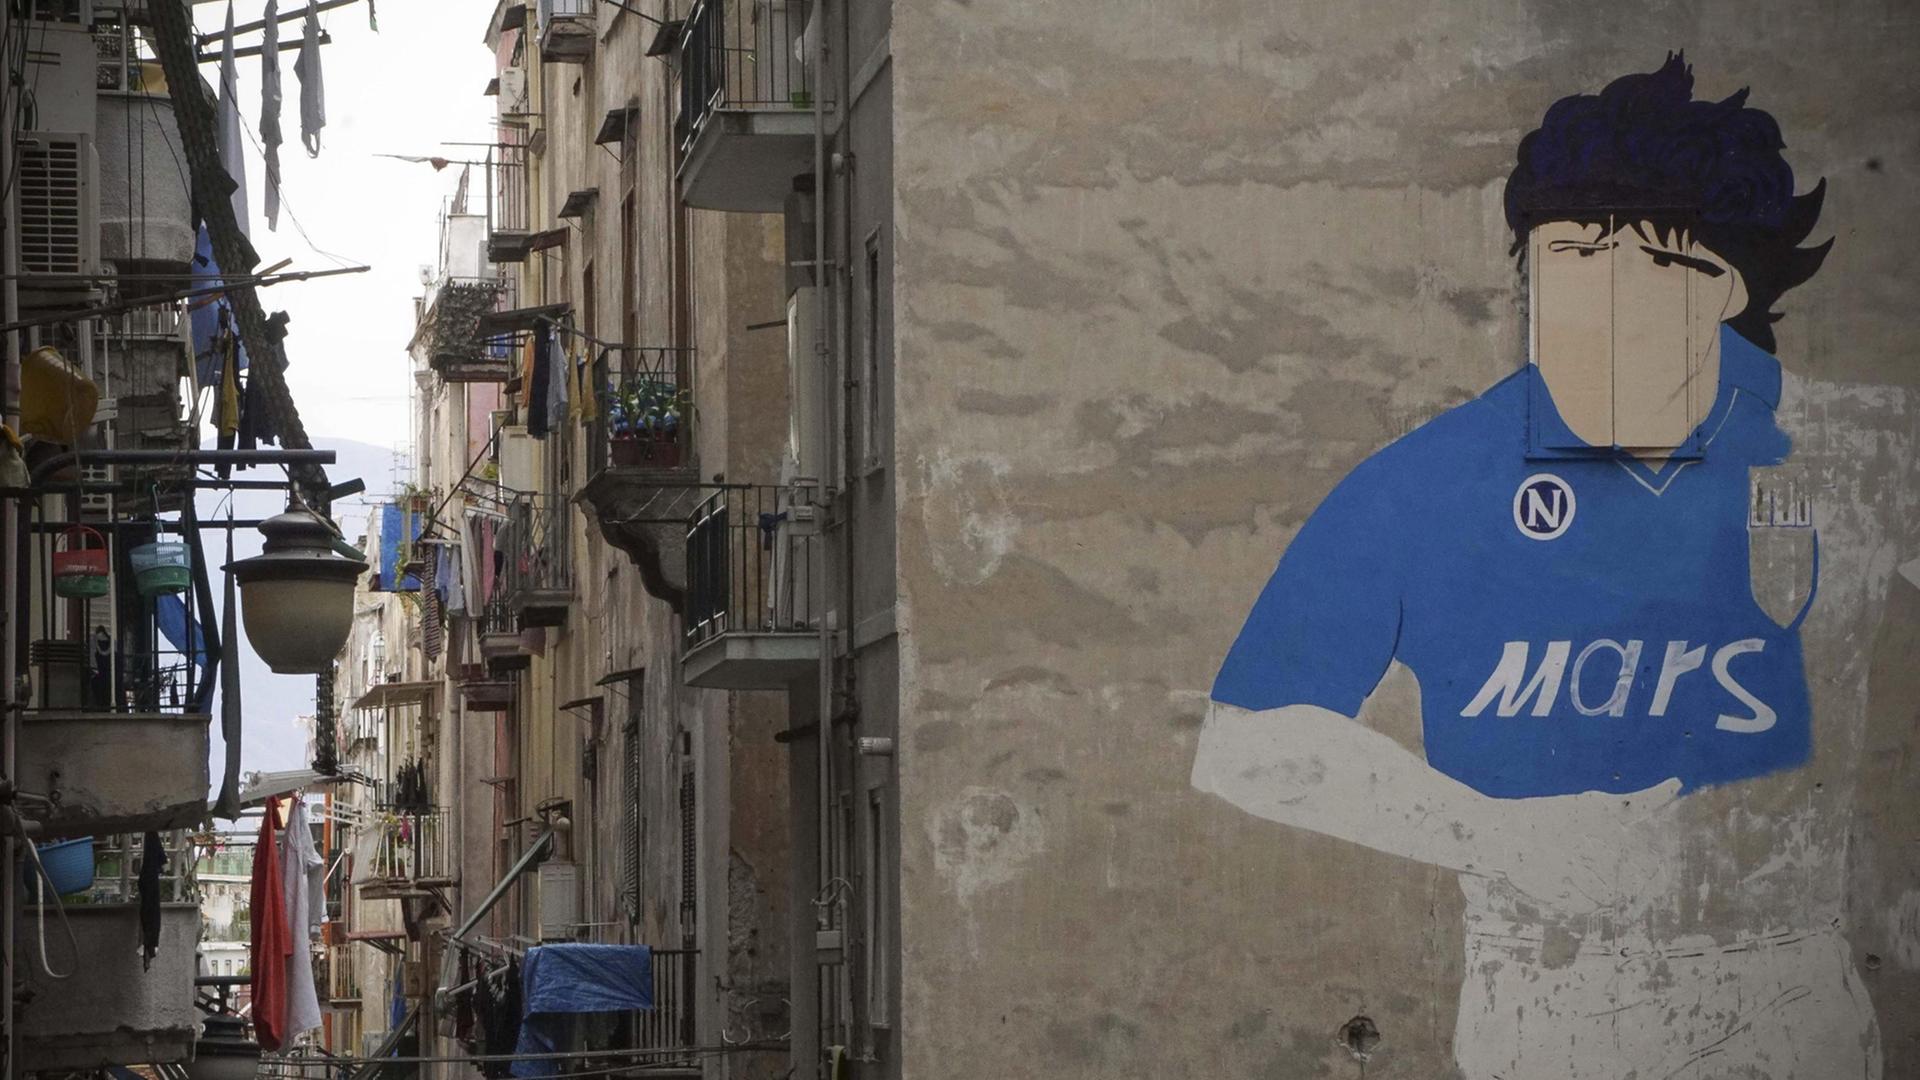 Ein fast 30 Jahre altes Wandbild in Neapel zeigt den argentinischen Fußballstar Diego Maradona, der in den 1980er-Jahren beim SSC Neapel spielte.